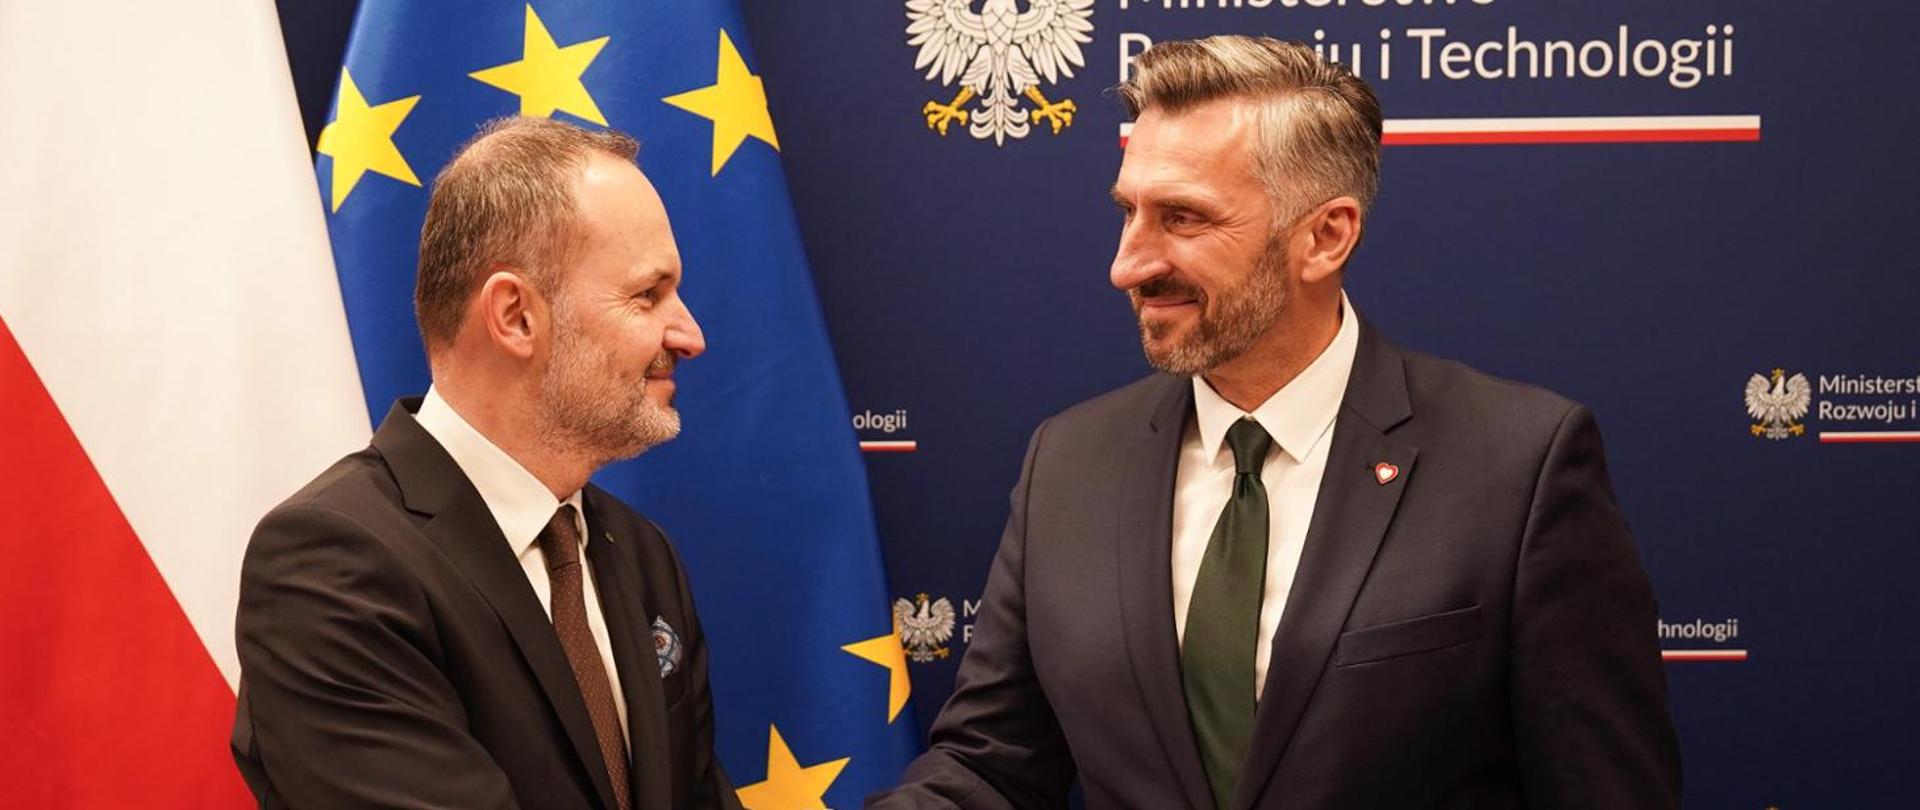 Na zdjęciu widać ministra Krzysztofa Hetmana i wiceministra Waldemara Sługockiego. W tle baner MRiT, a po prawej stronie flagi Polski i UE.